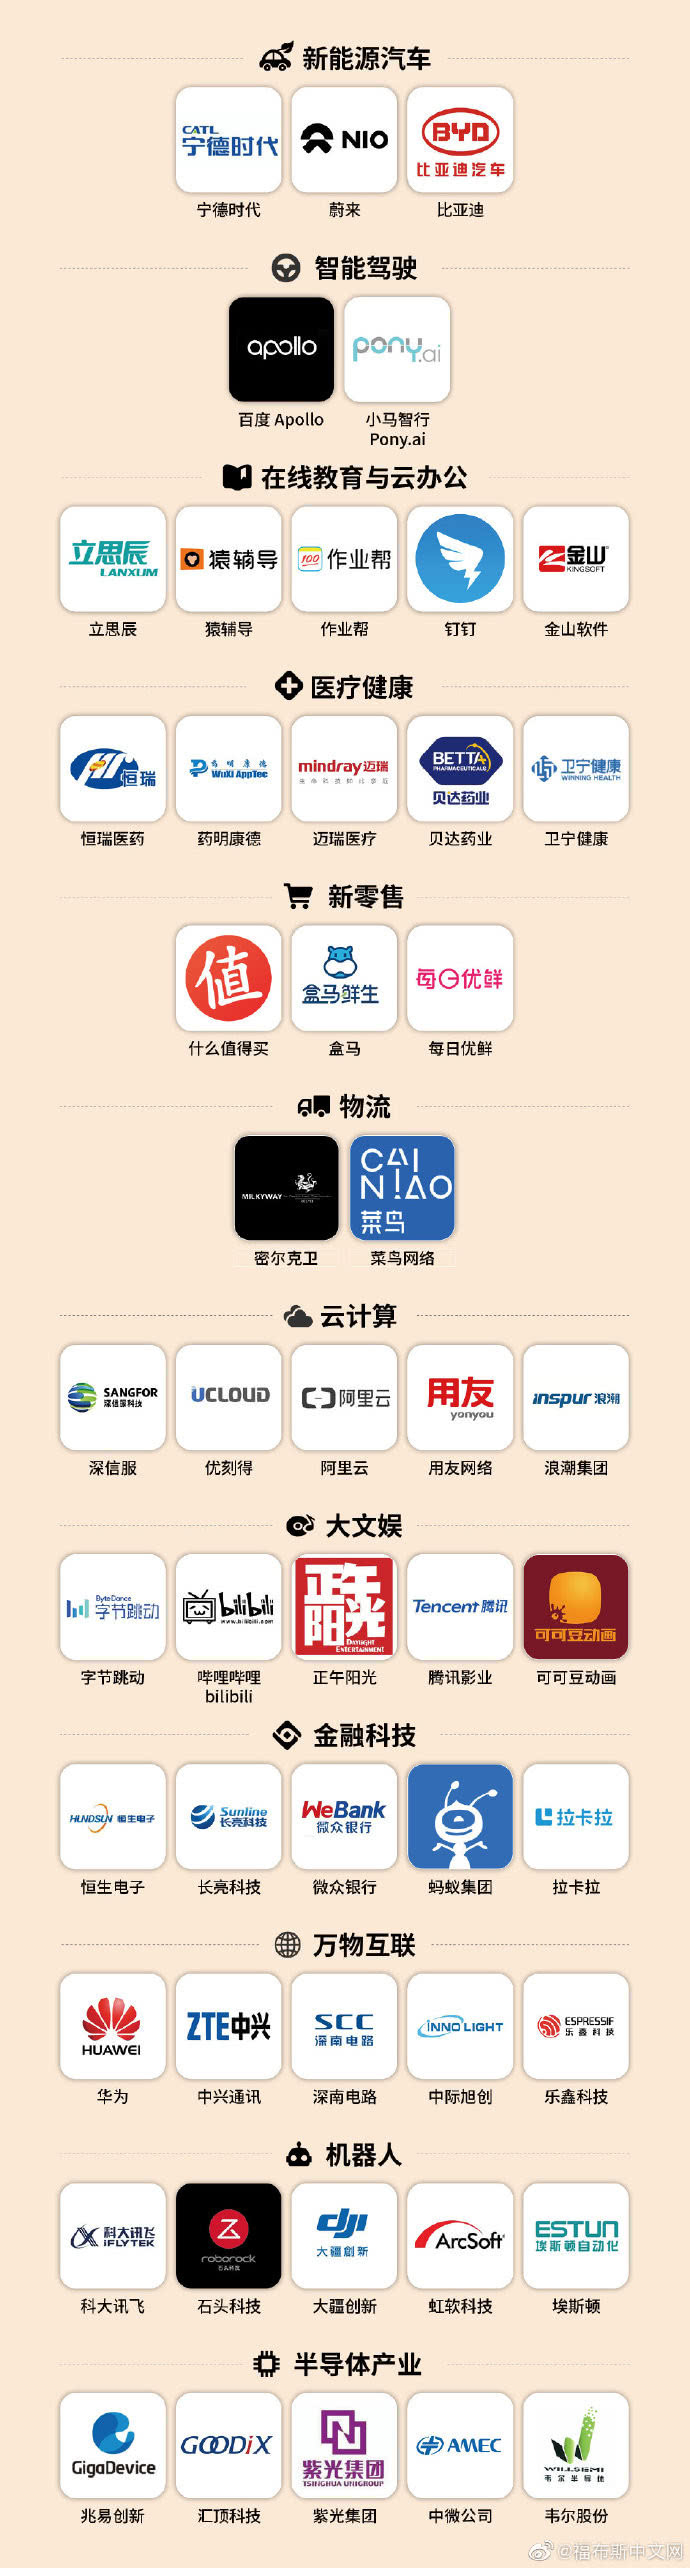 福布斯中国发布“最具创新力企业榜”华为、中兴通讯、比亚迪等上榜 